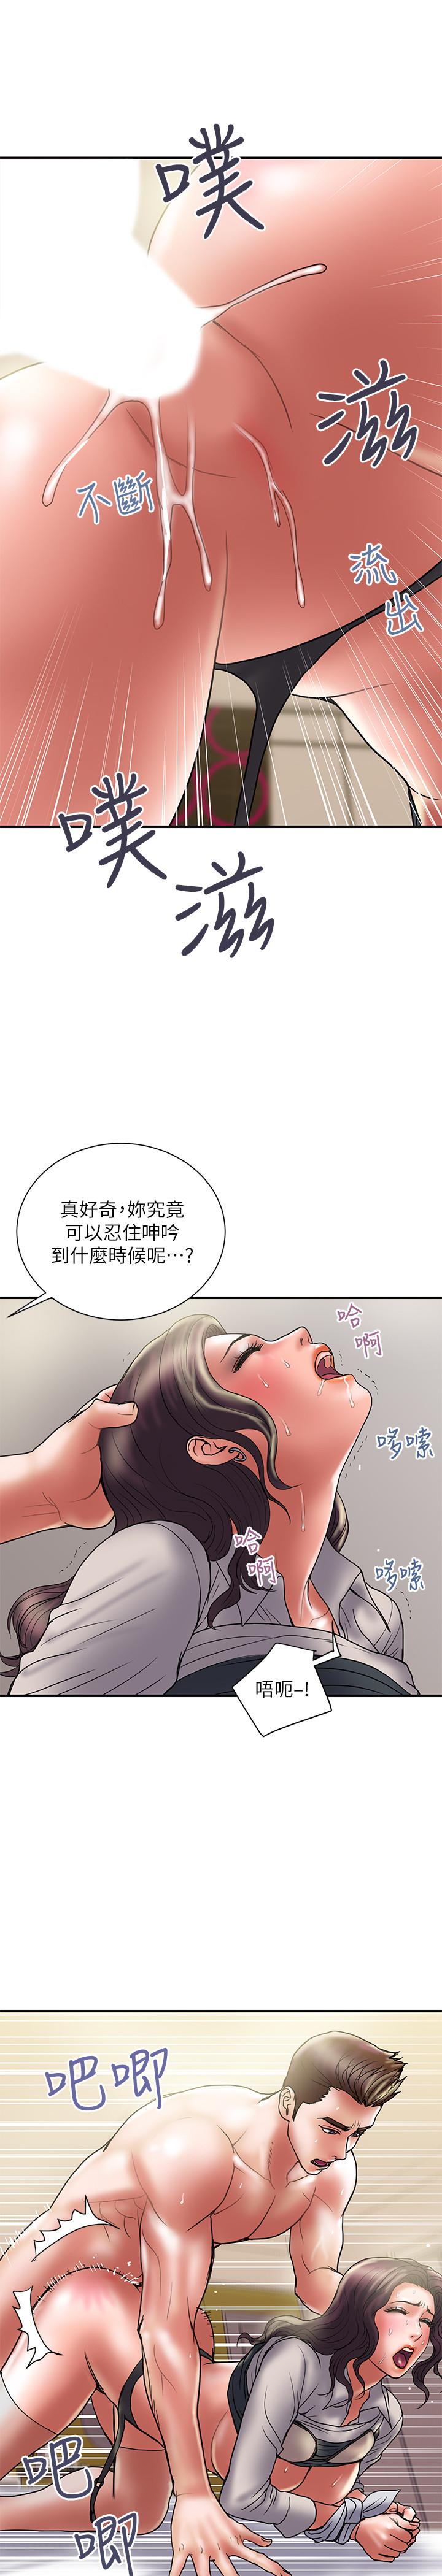 韩国污漫画 計劃出軌 第37话-屈辱与快感交错 13